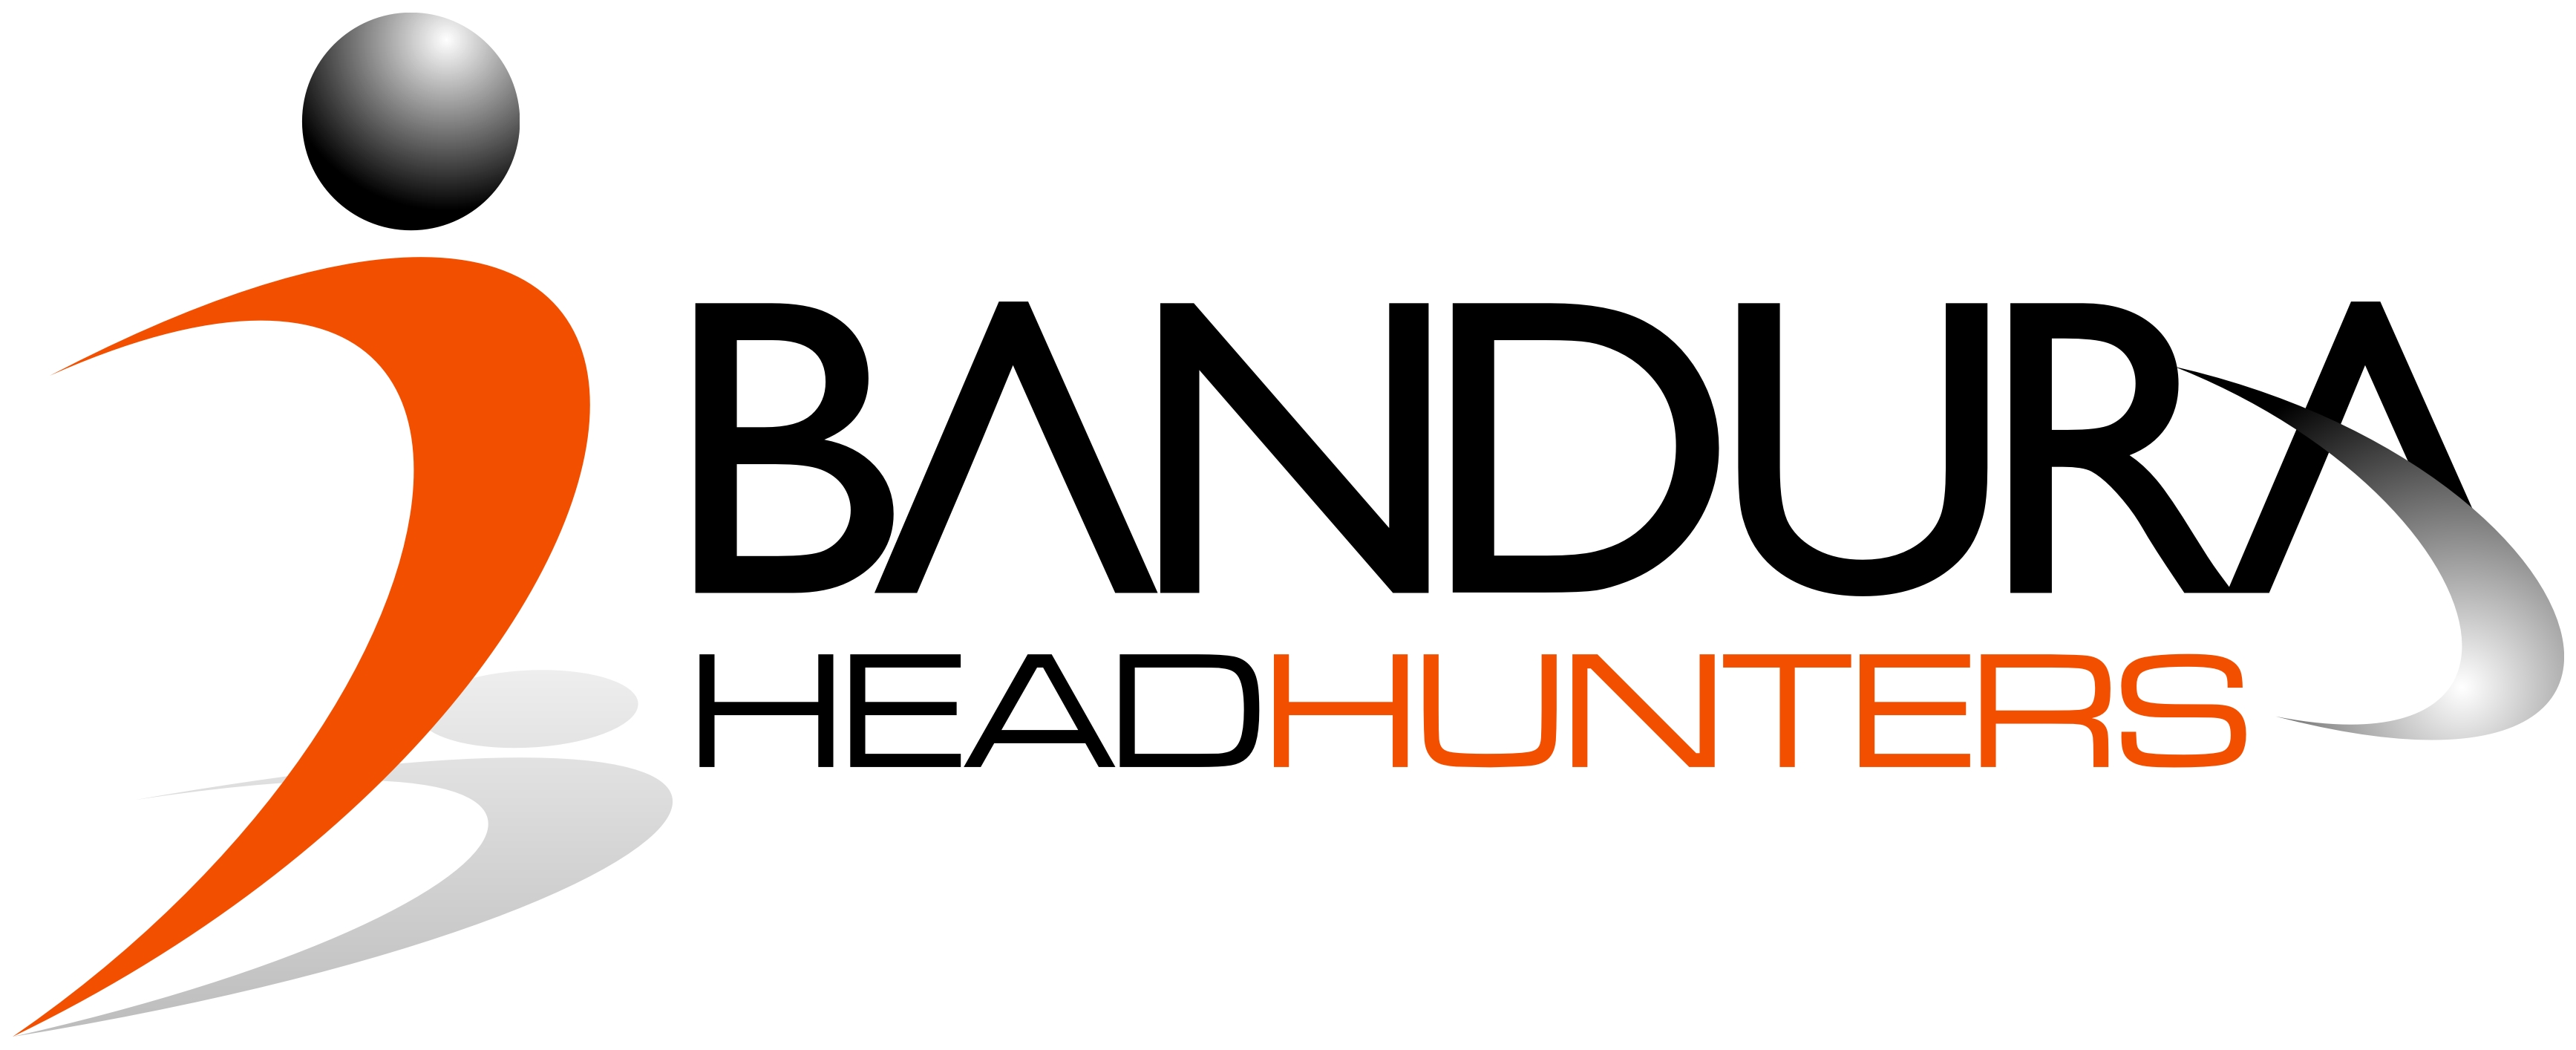 Bandura Recruitment Headhunters